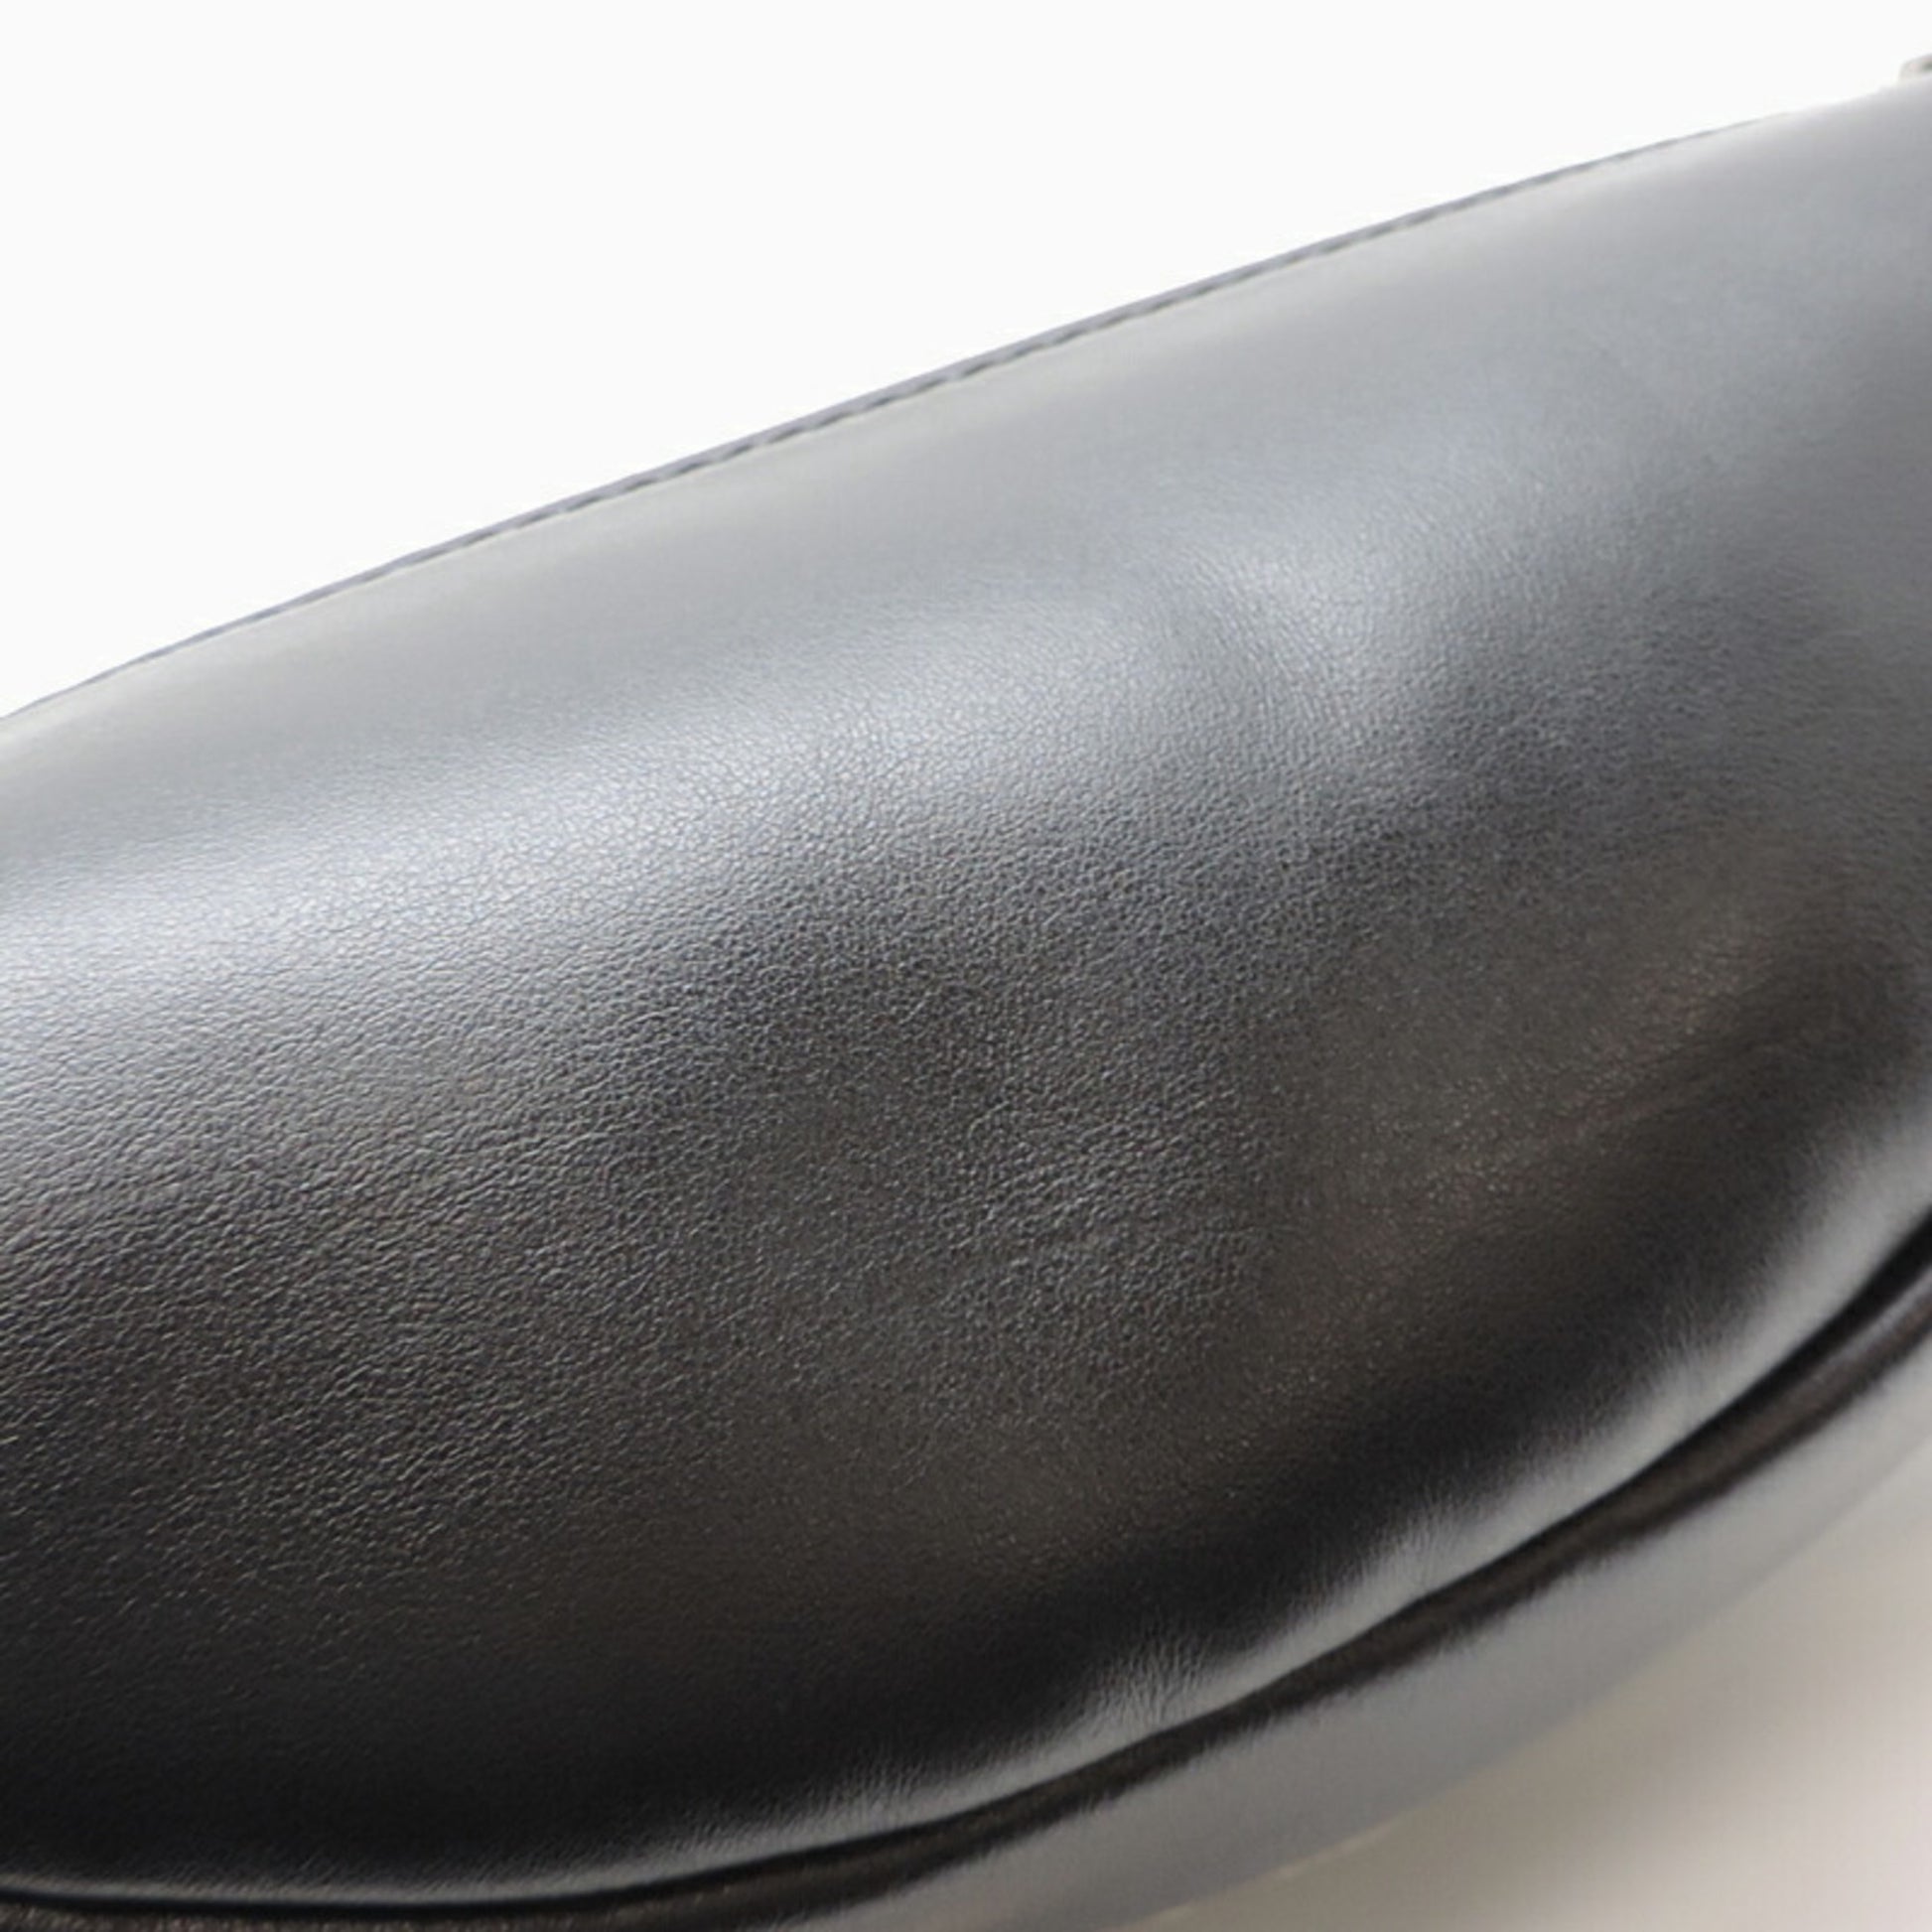 Louis Vuitton] Waist Bag Discovery Bum Bag Monogram Eclipse M44336 Body Bag  Men's Black [Parallel Import], black (black 19-3911tcx), One Size :  : Fashion